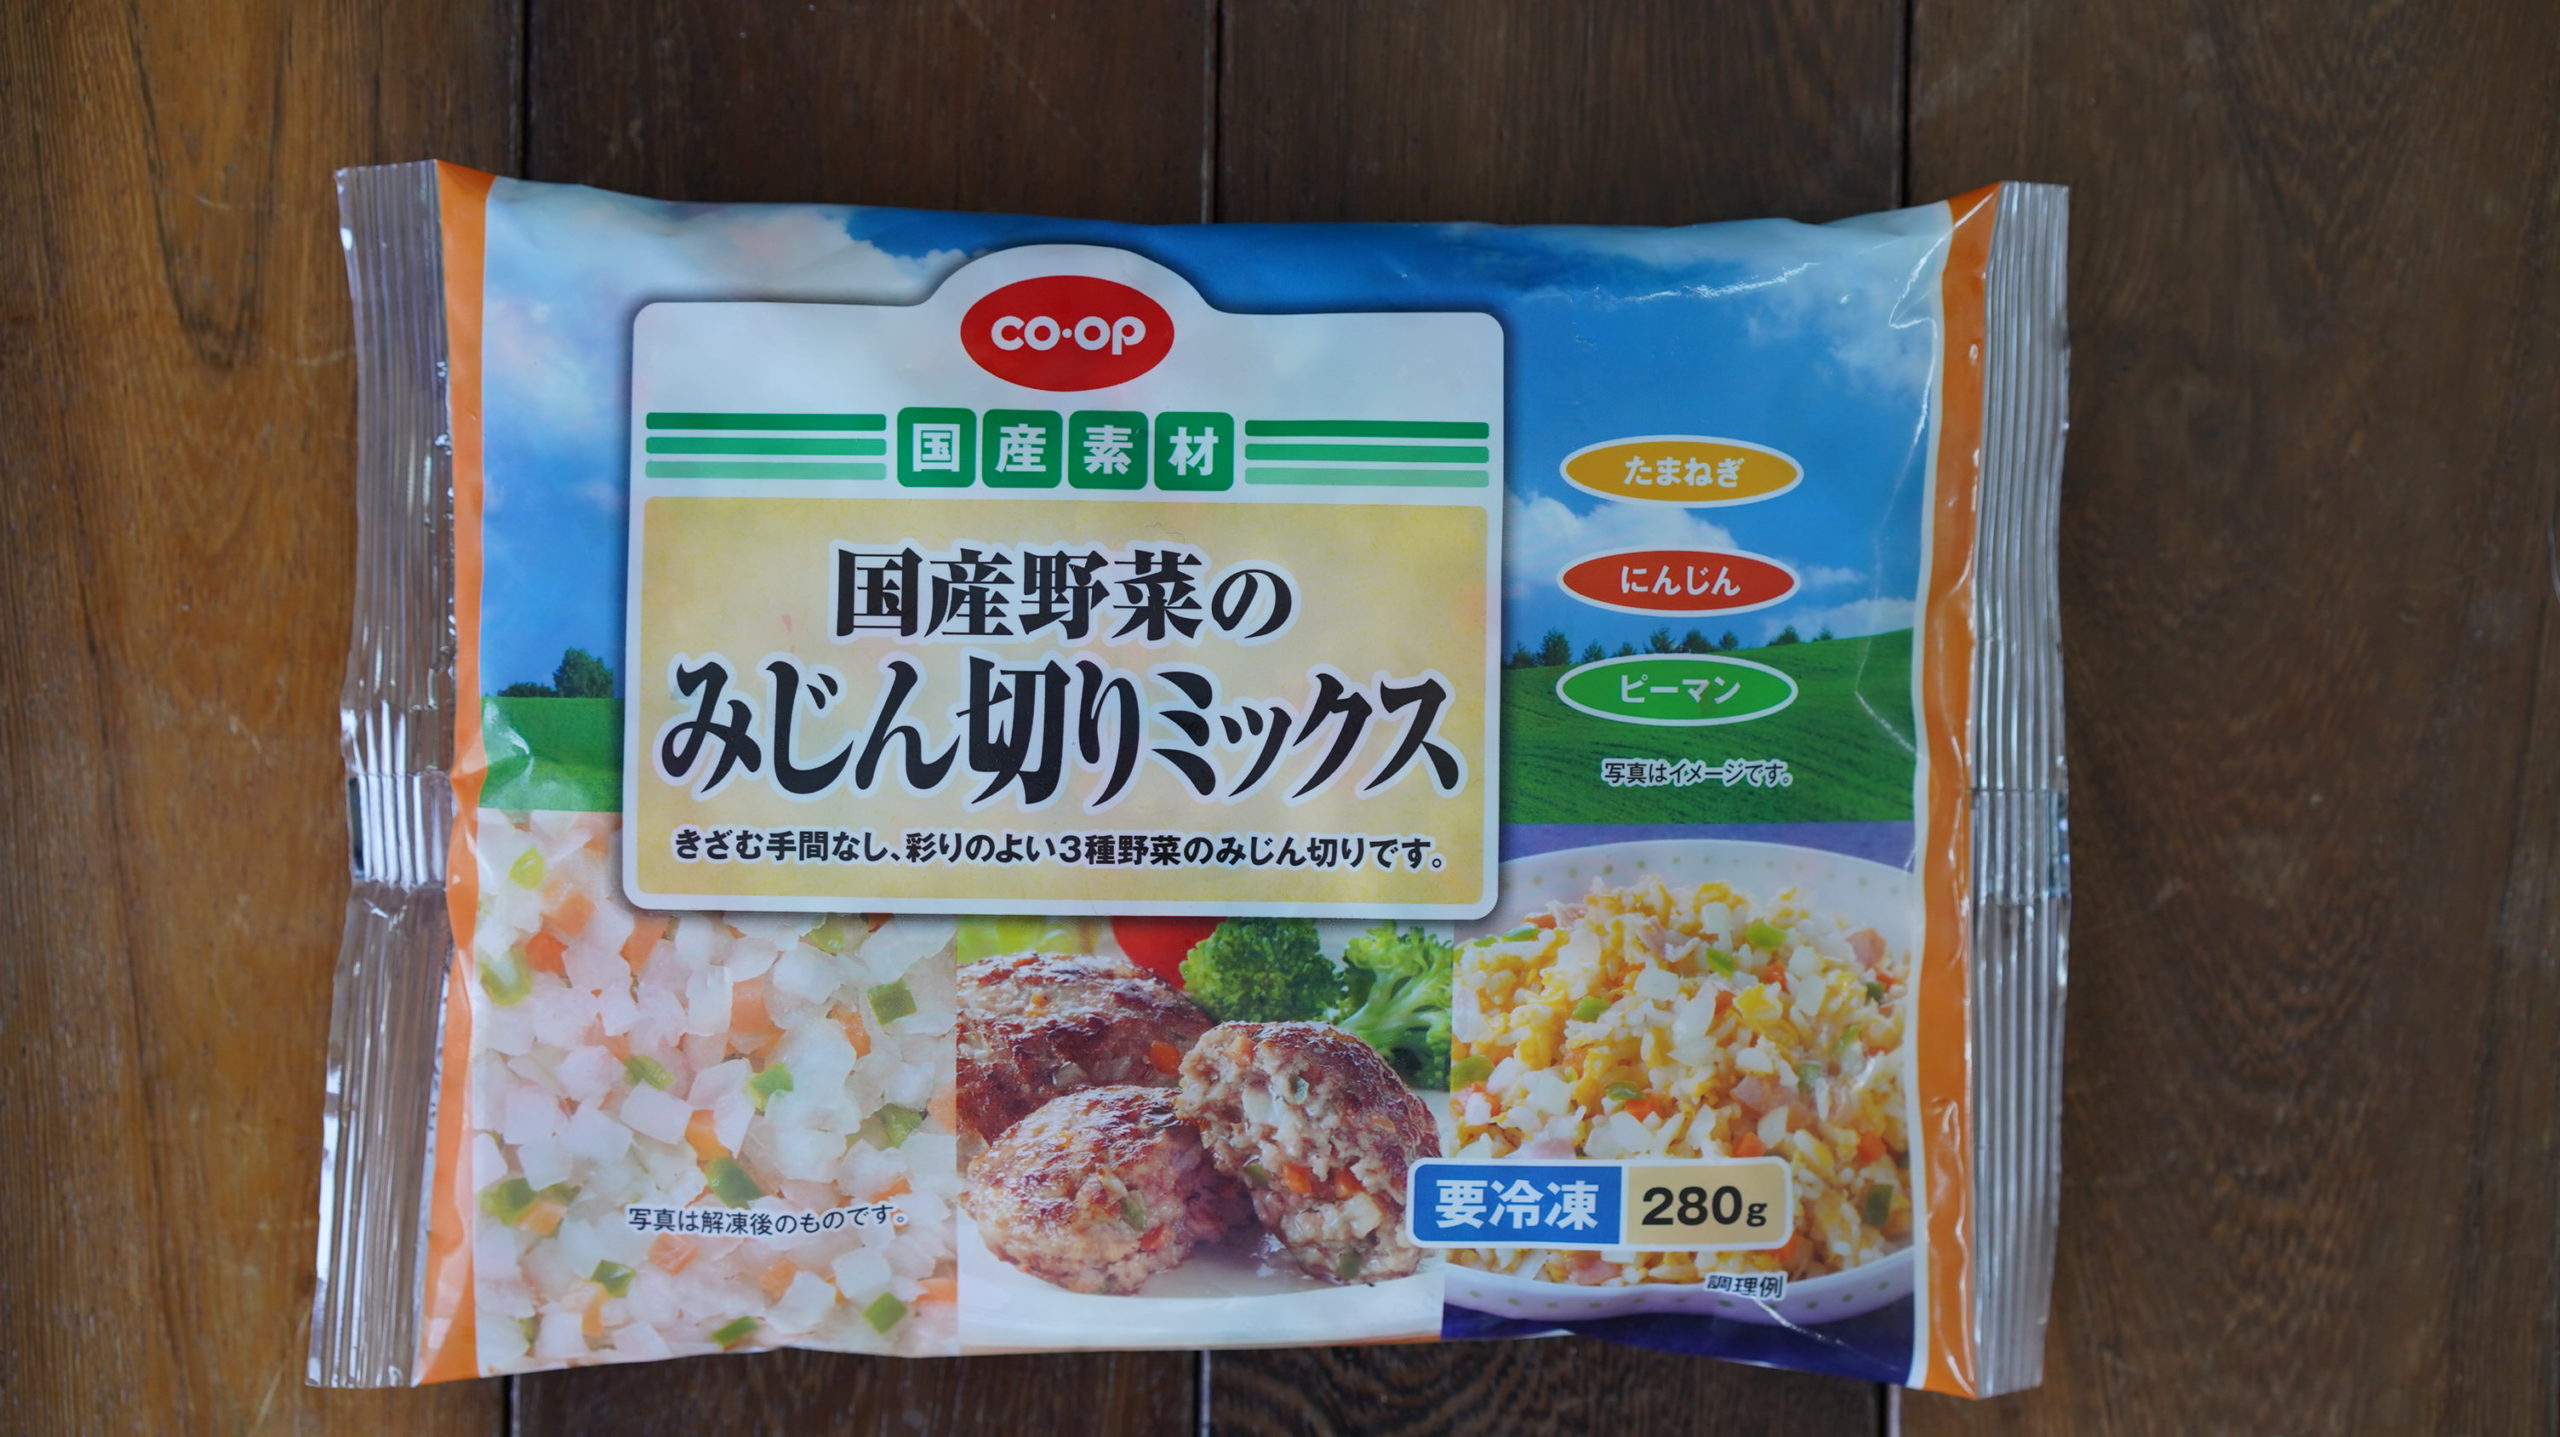 生協coop宅配の冷凍食品「国産野菜のみじん切りミックス」のパッケージ写真